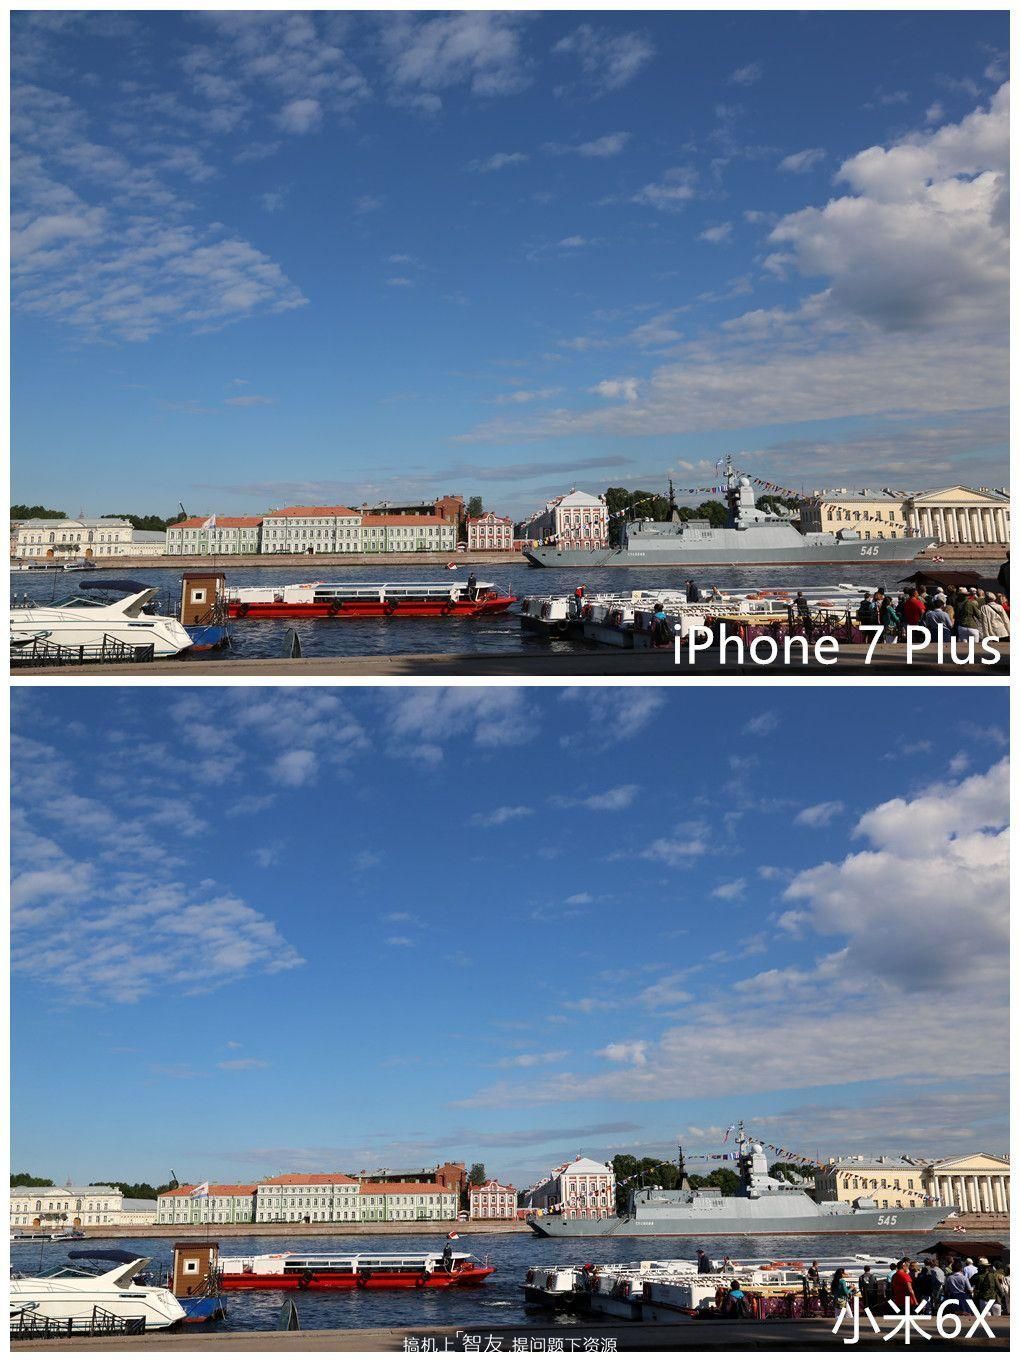 苹果7 Plus拍照长焦效果如何？实拍样张欣赏（iPhone 7 Plus长焦镜头拍照样张展示）